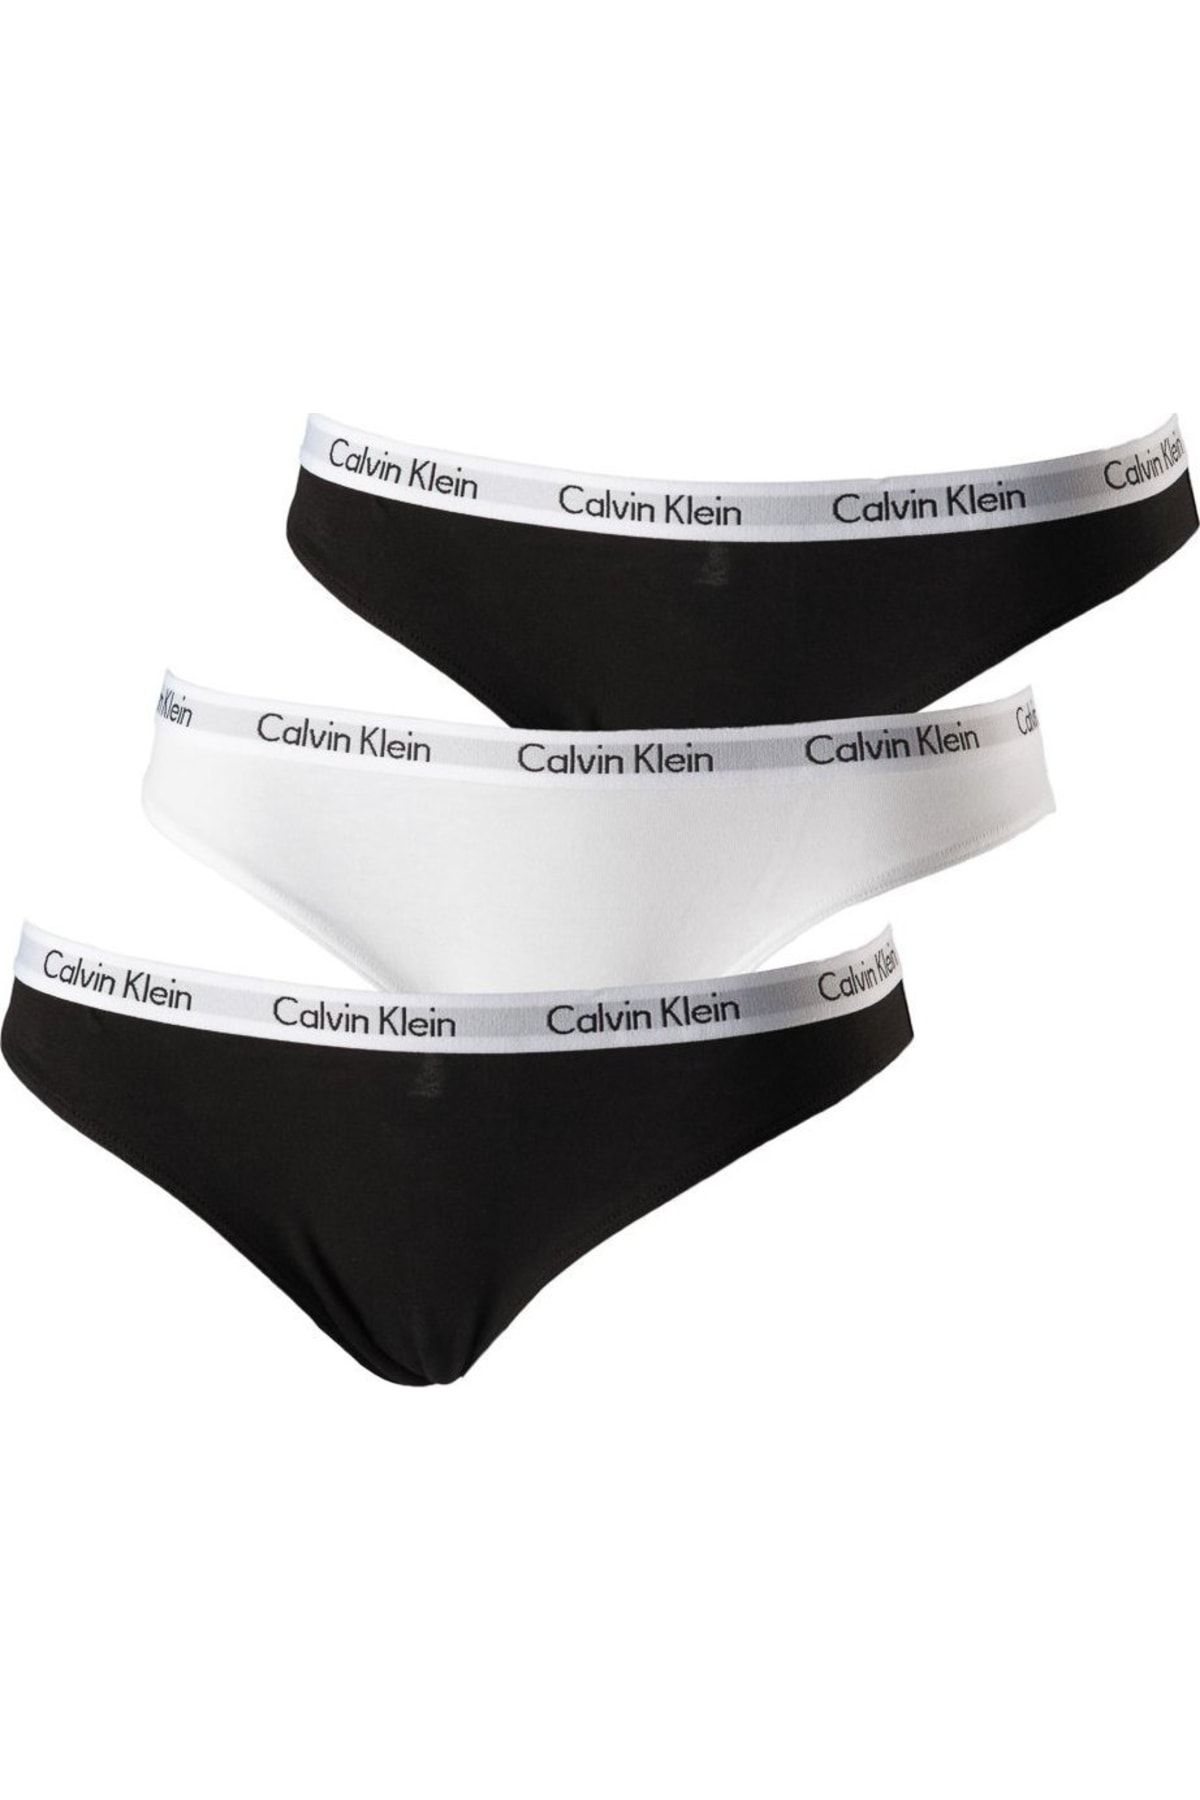 bevind zich Rondlopen Belang Calvin Klein Slip - Schwarz - 3er-Pack - Trendyol